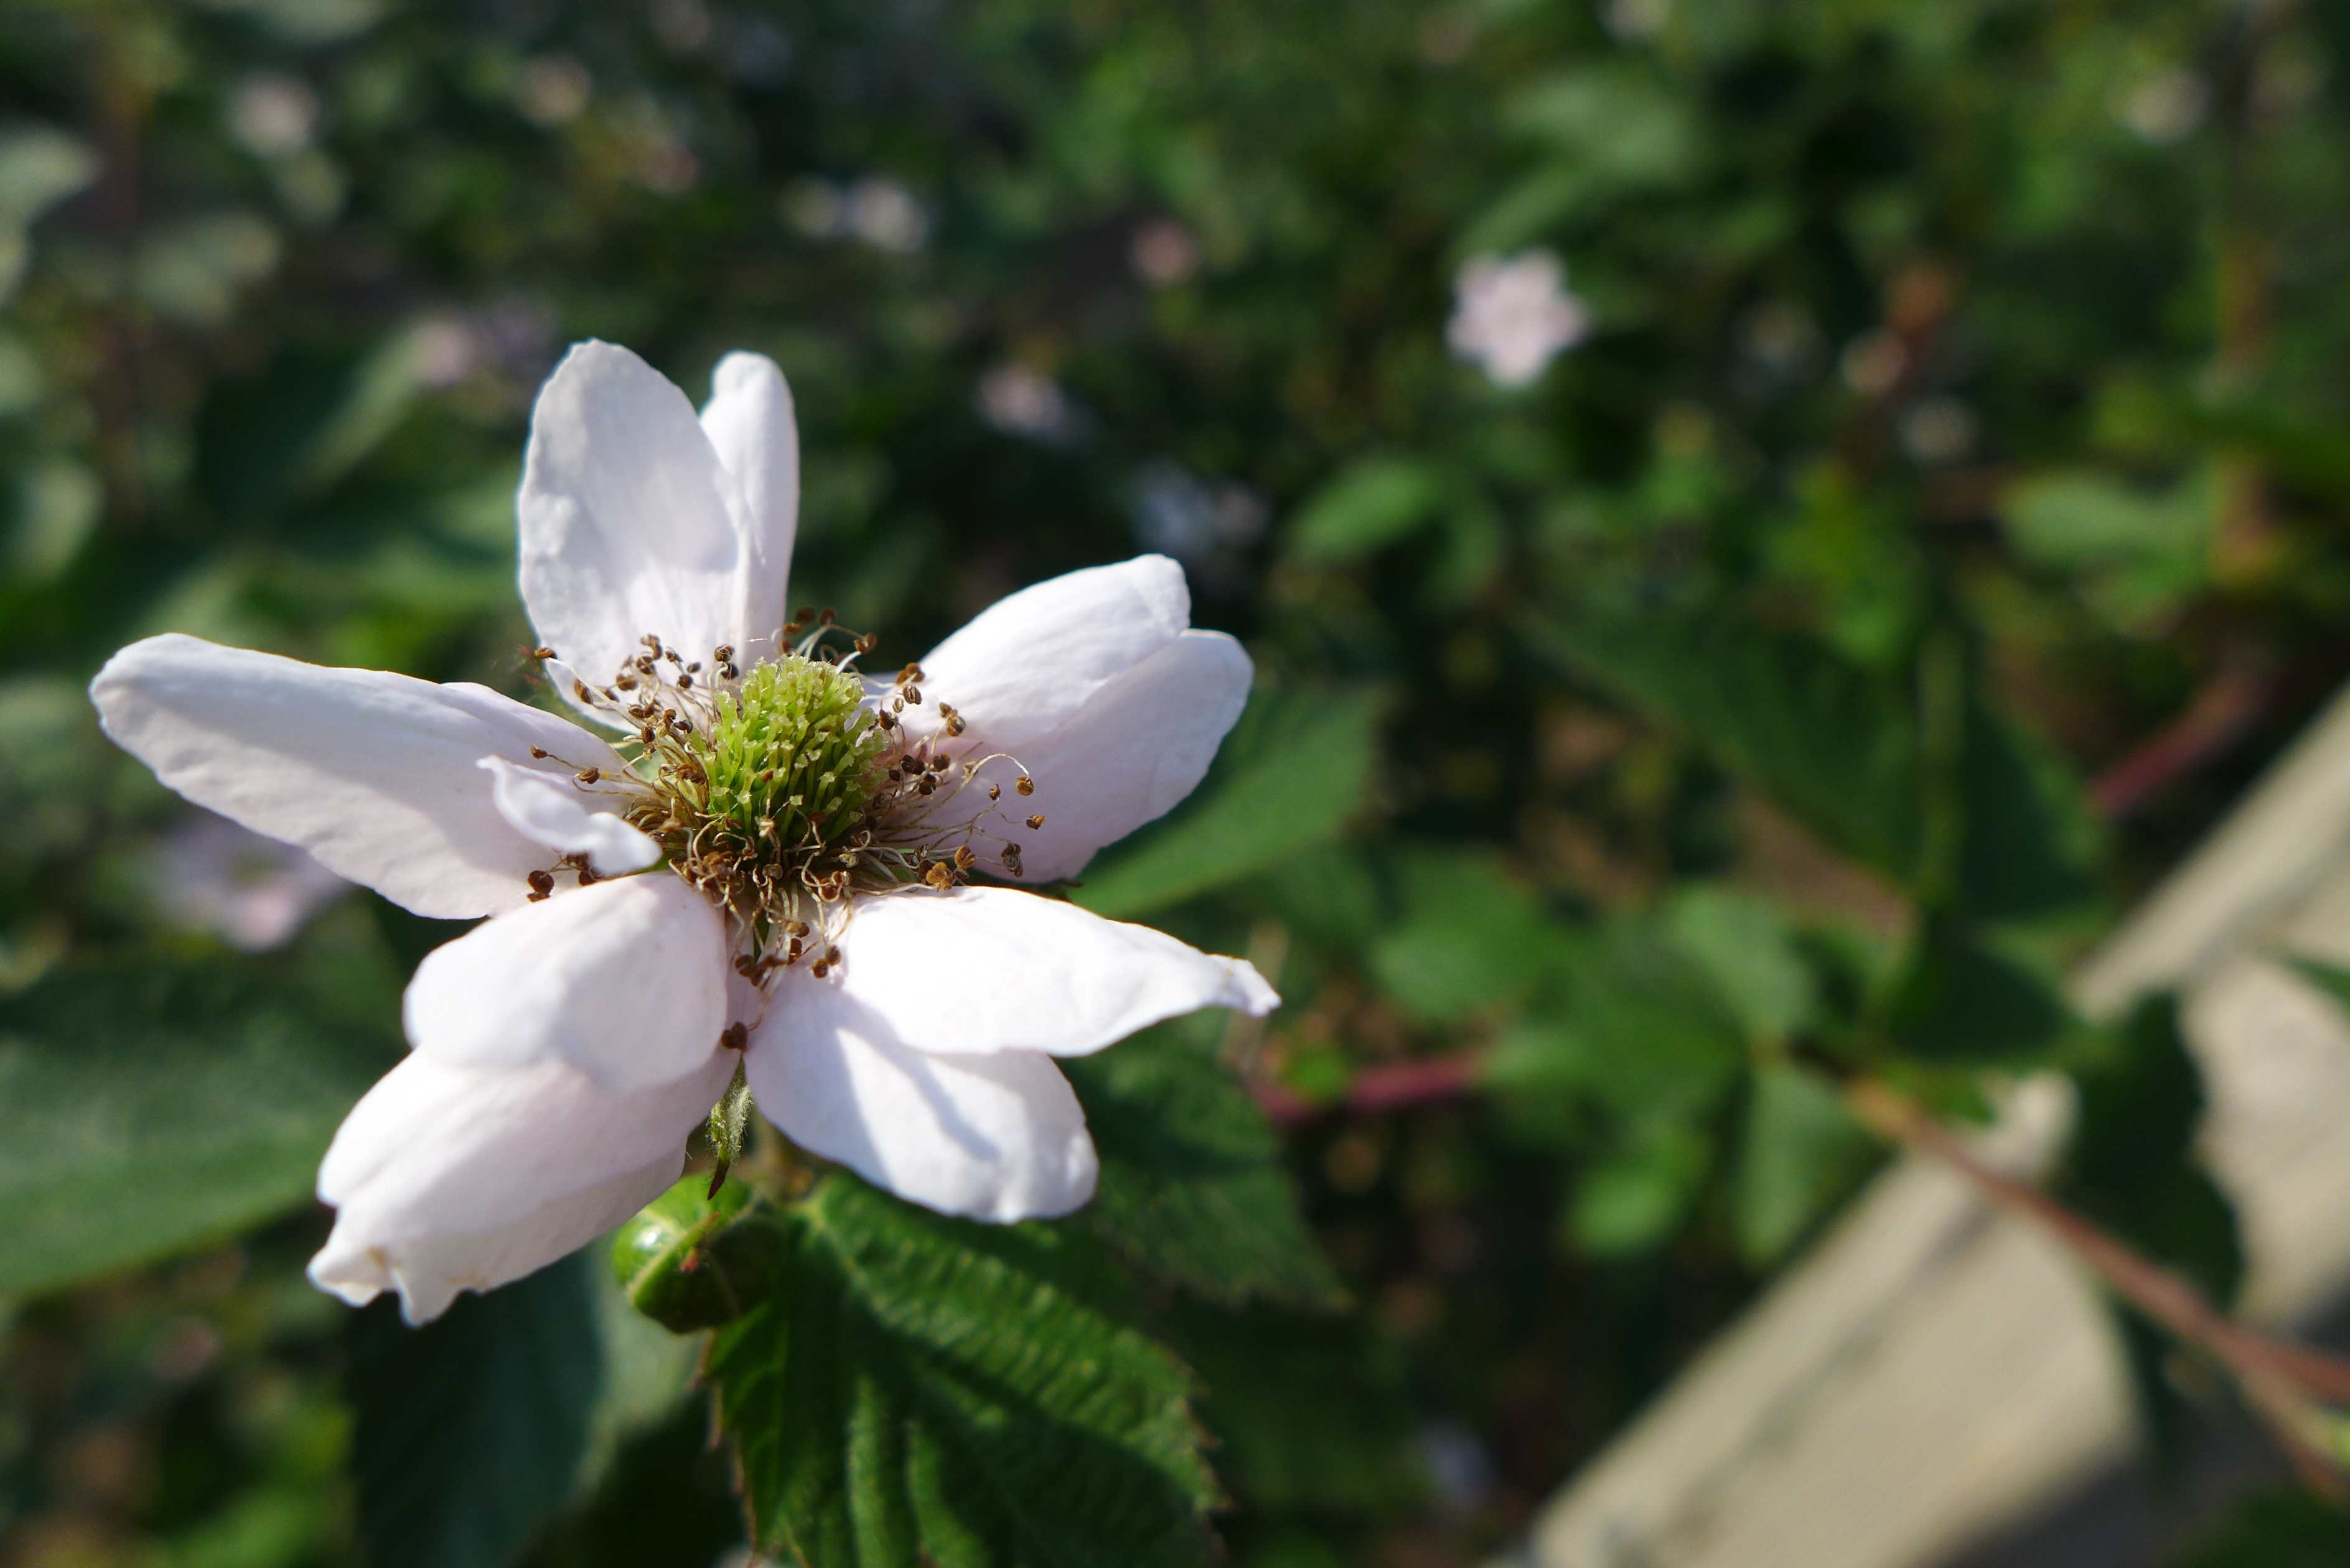 Blackberry blossom